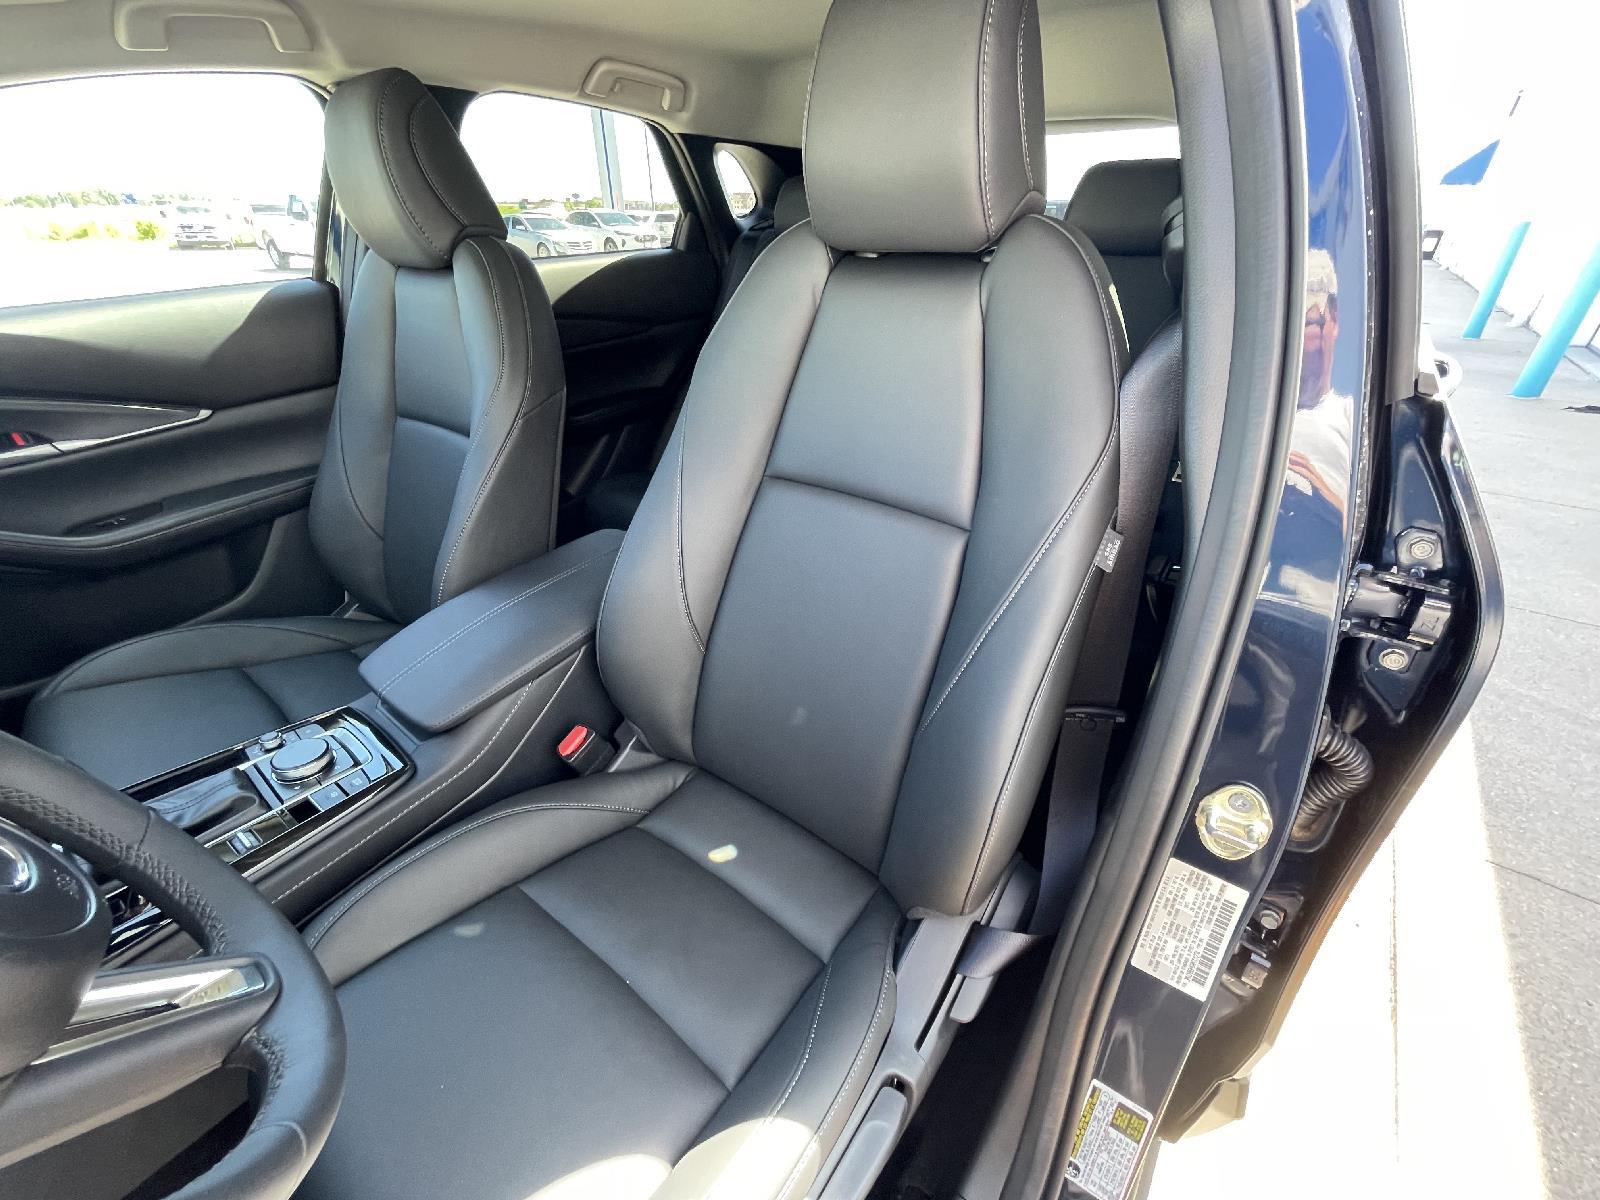 New 2024 Mazda CX-30 2.5 S Select Sport SUV for sale in Lincoln NE